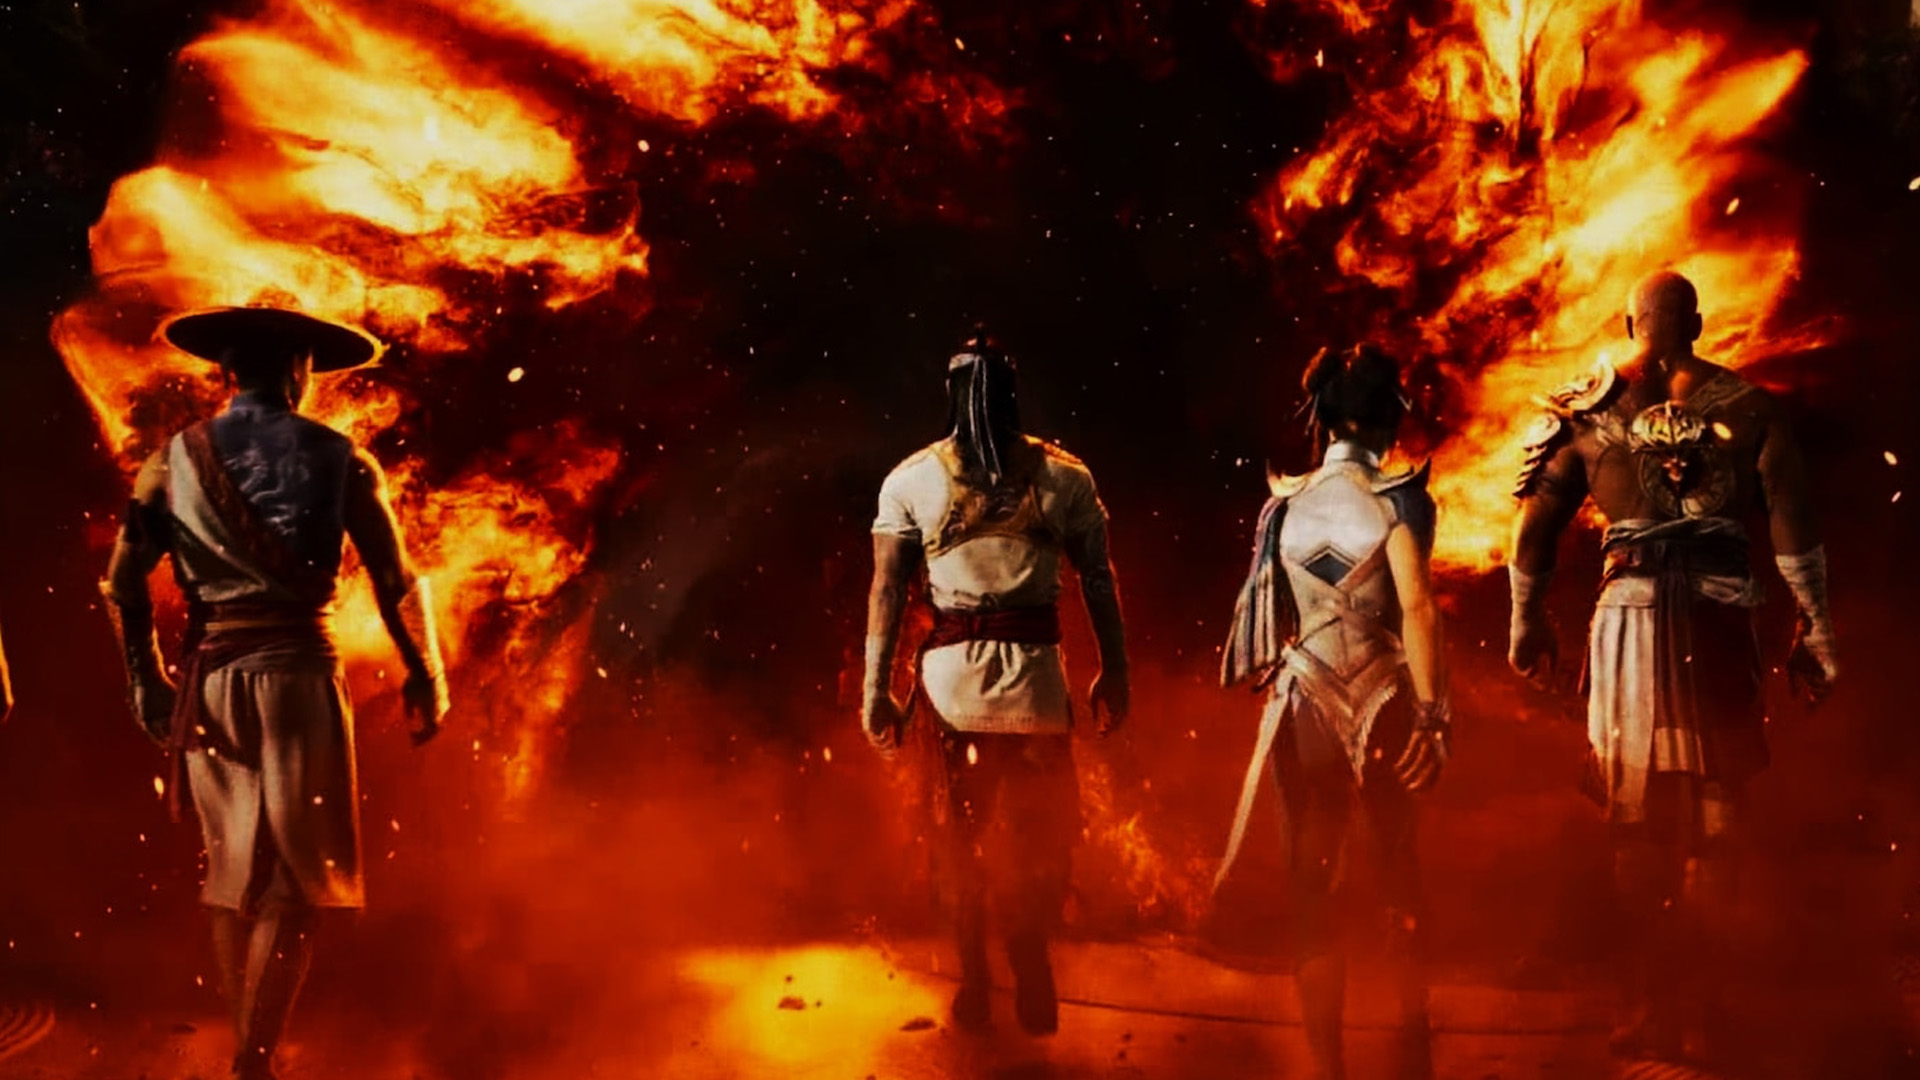 Скриншот из Mortal Kombat 1 для ПК. Обзор сюжета Mortal Kombat 1